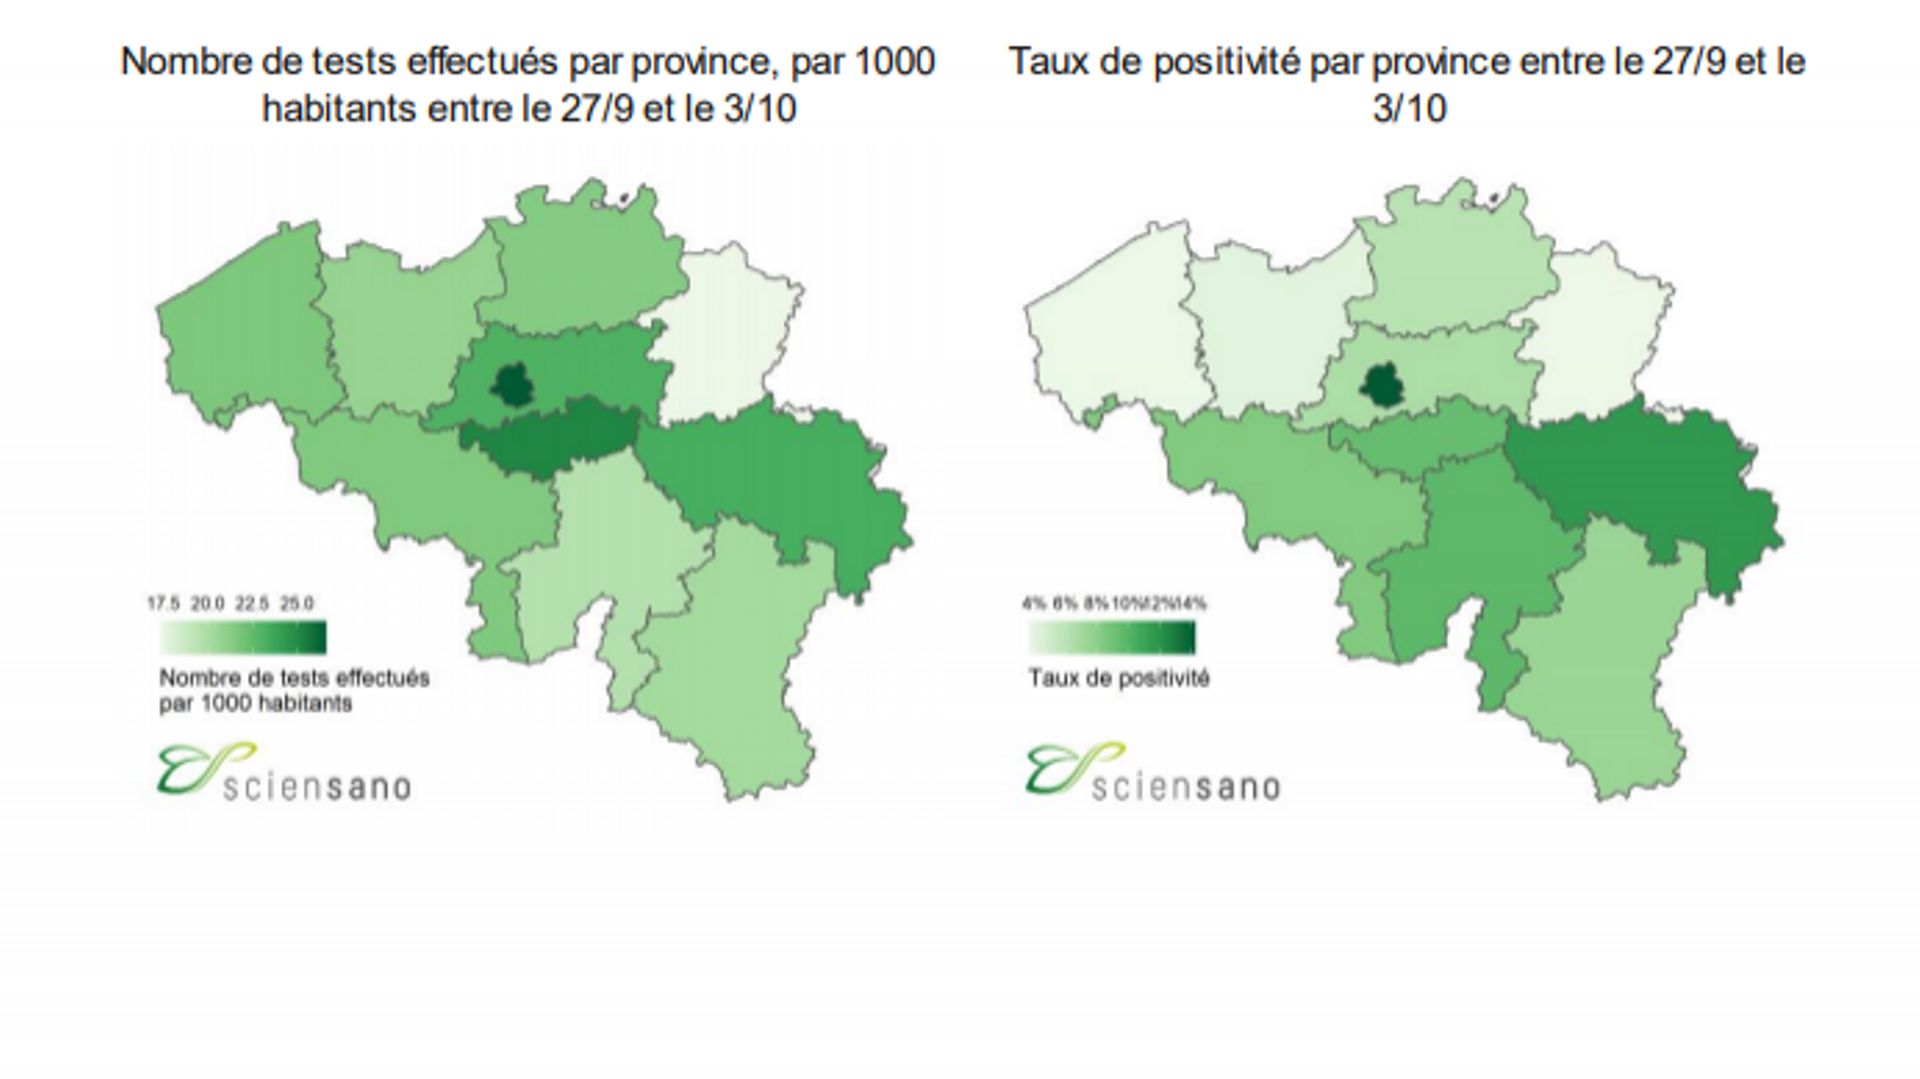 Bruxelles est la deuxième capitale européenne la plus touchée par le coronavirus, entre Madrid et Paris